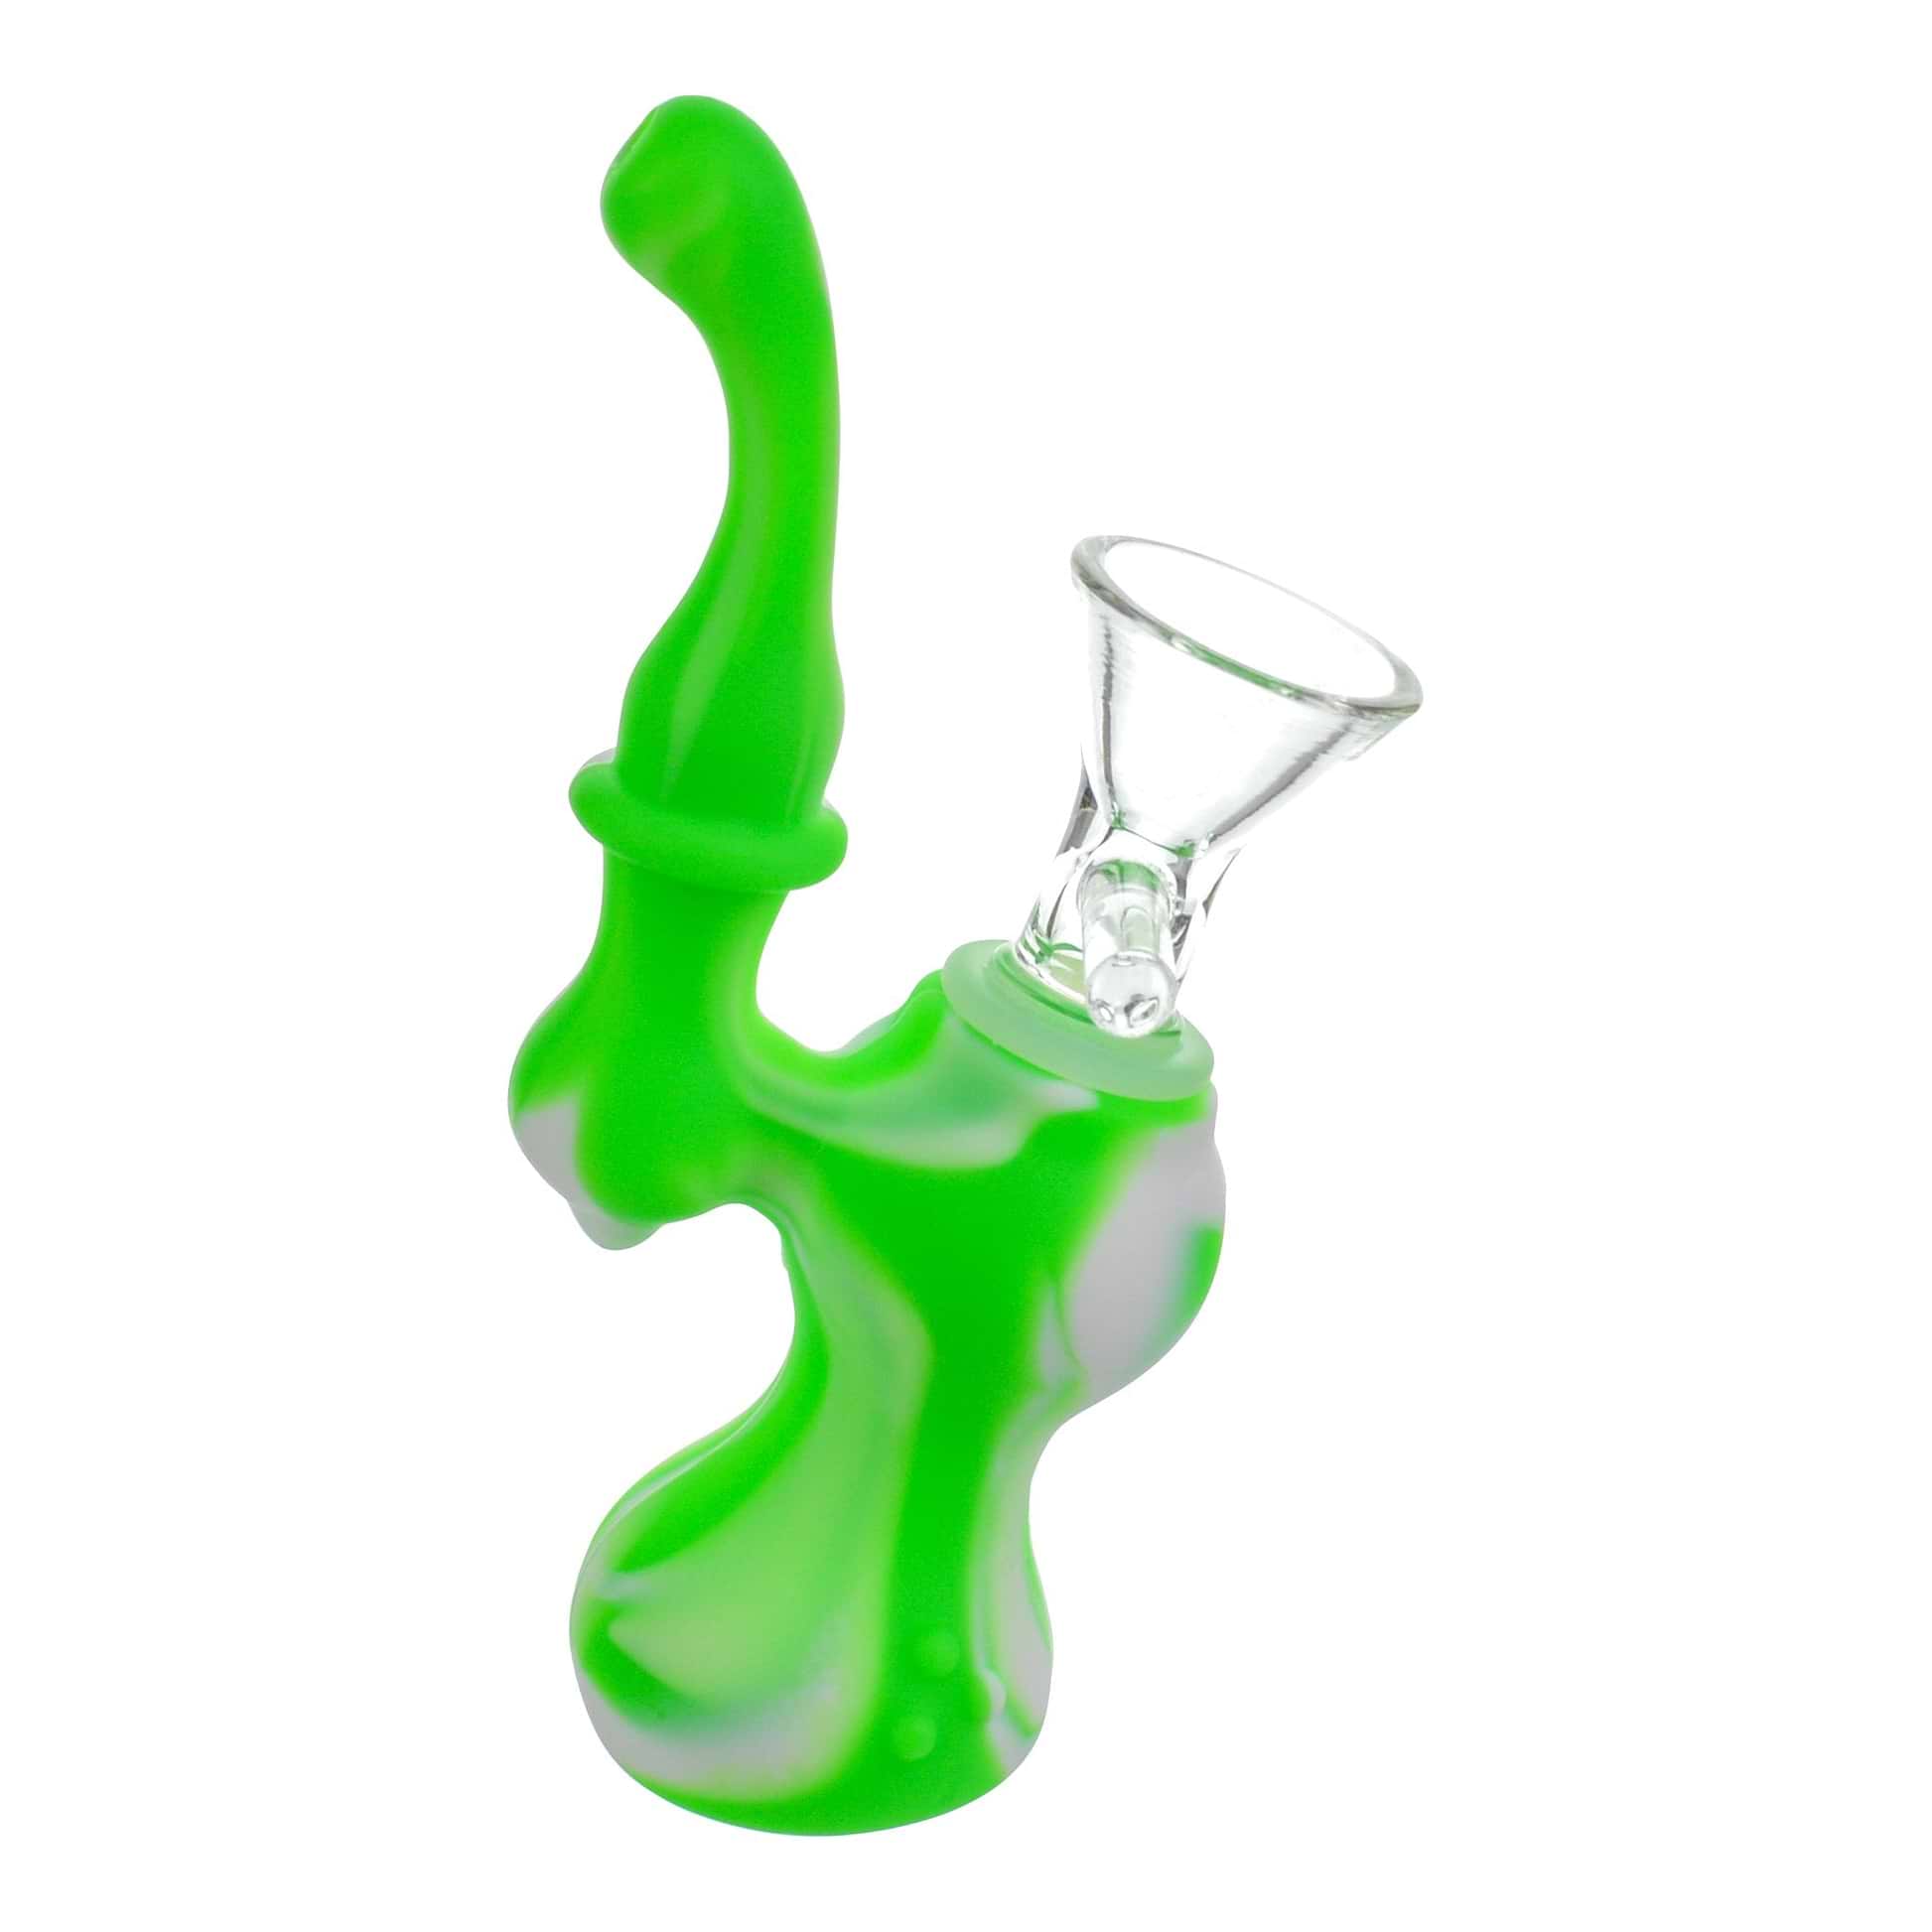 Silicone Bubbler - 5in Green / White